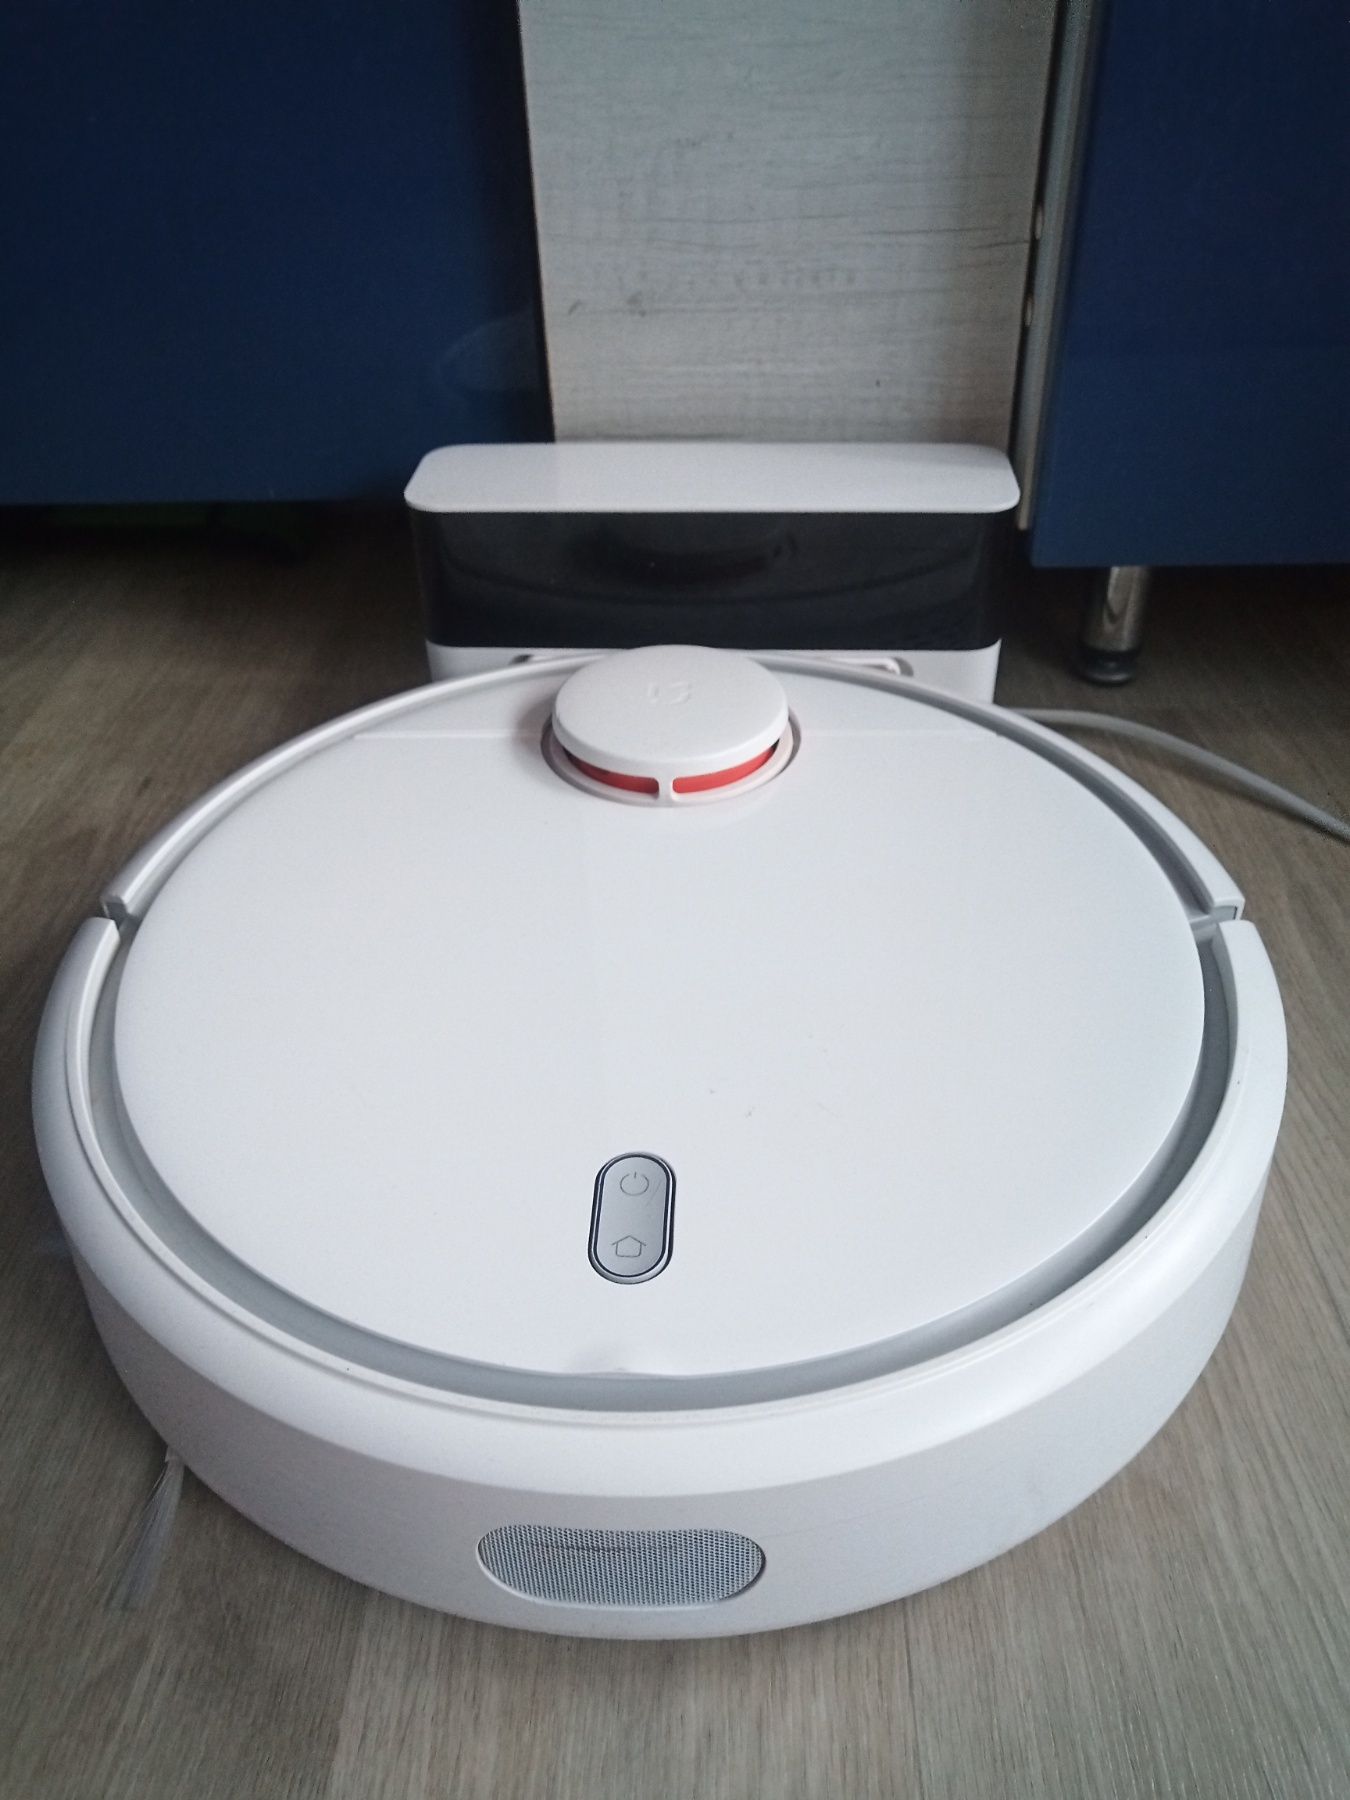 MiJia Mi Robot Vacuum Cleaner mop робот-пылесос Xiaomi